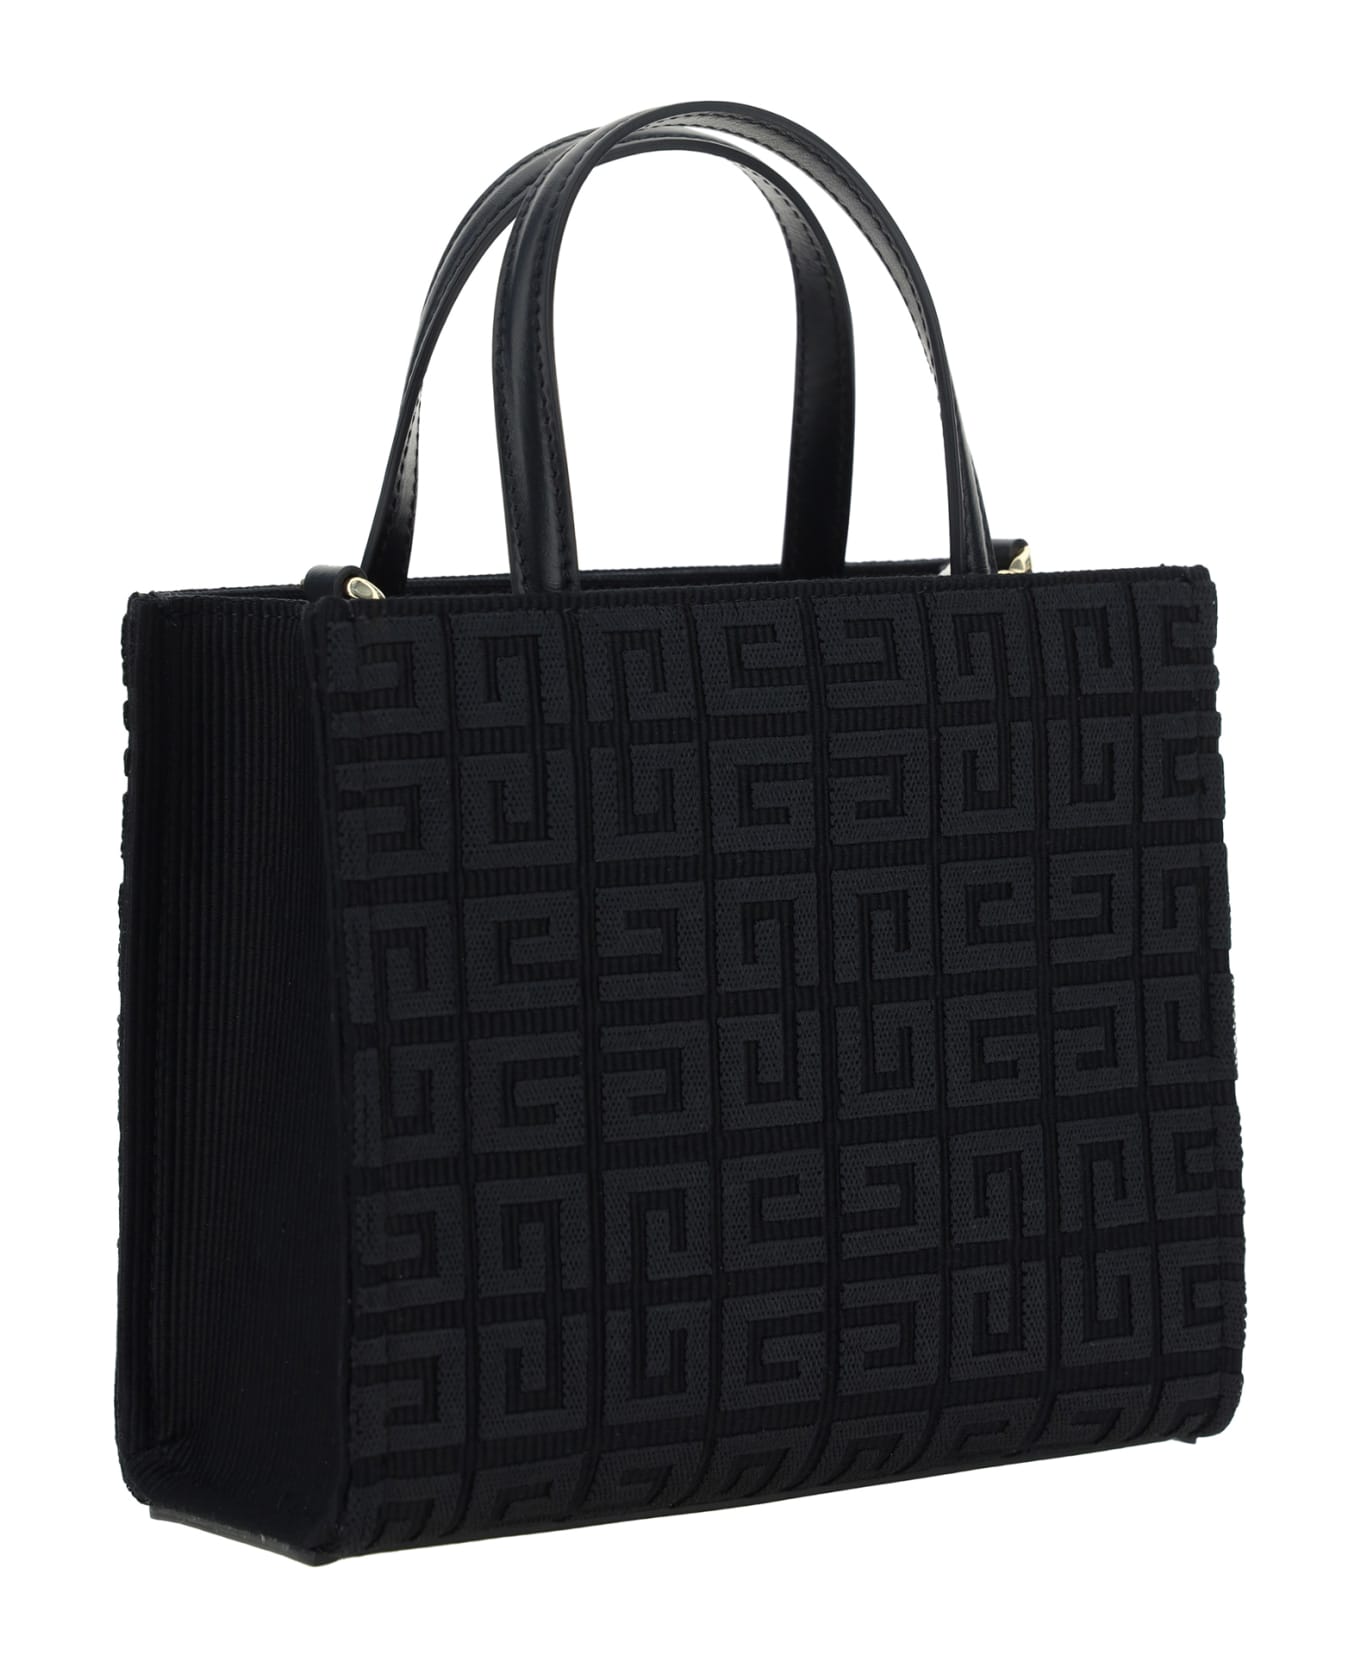 Givenchy G-tote Handbag - Black